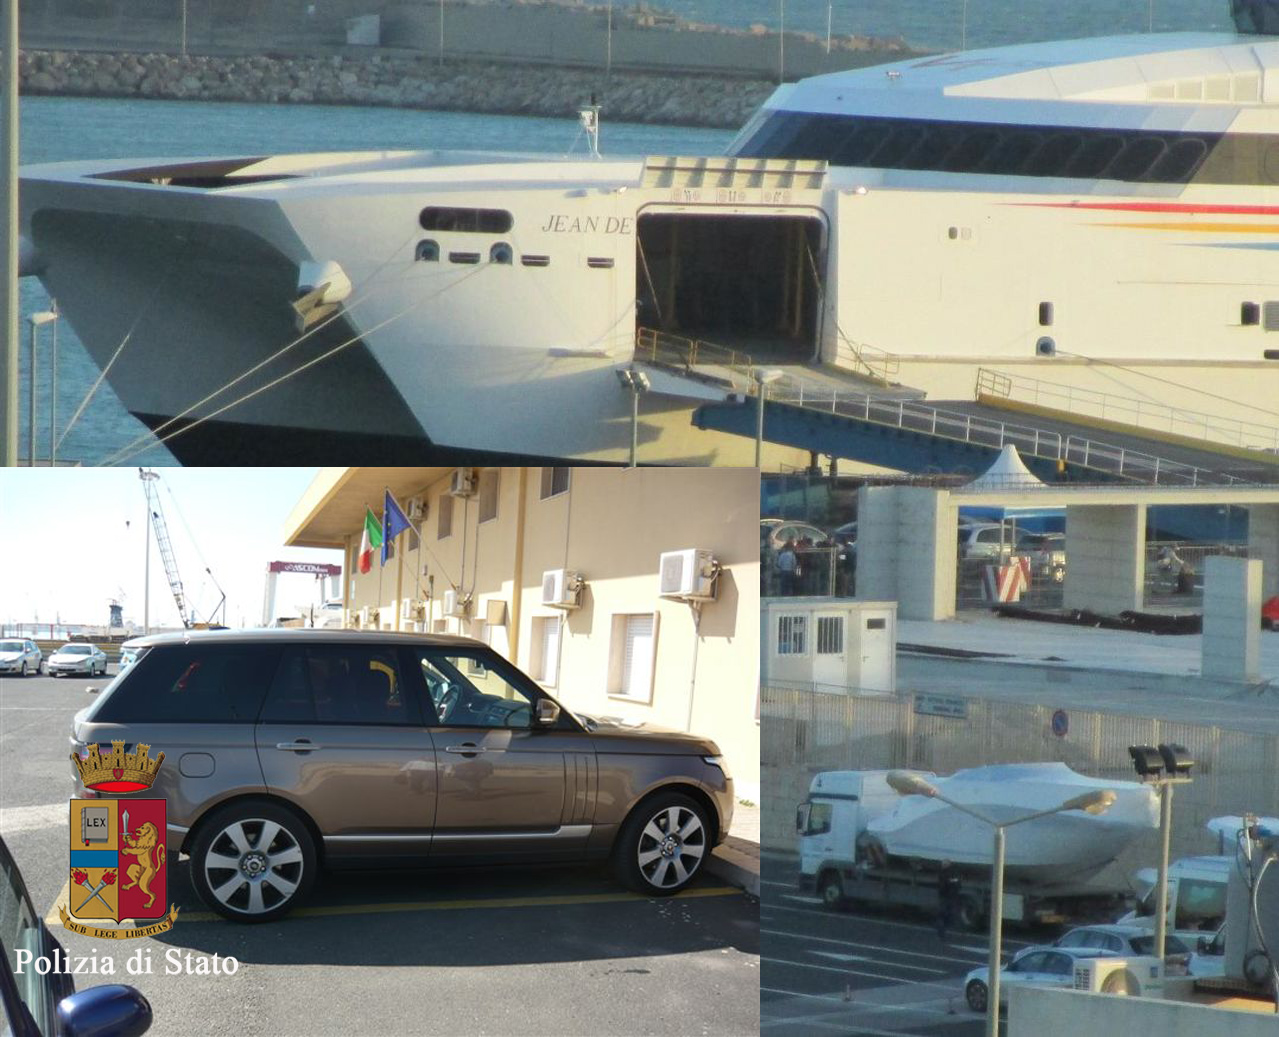  Pozzallo – Arrestato libico, stava per imbarcarsi per Malta con un’auto svizzera rubata dal valore di €140.000